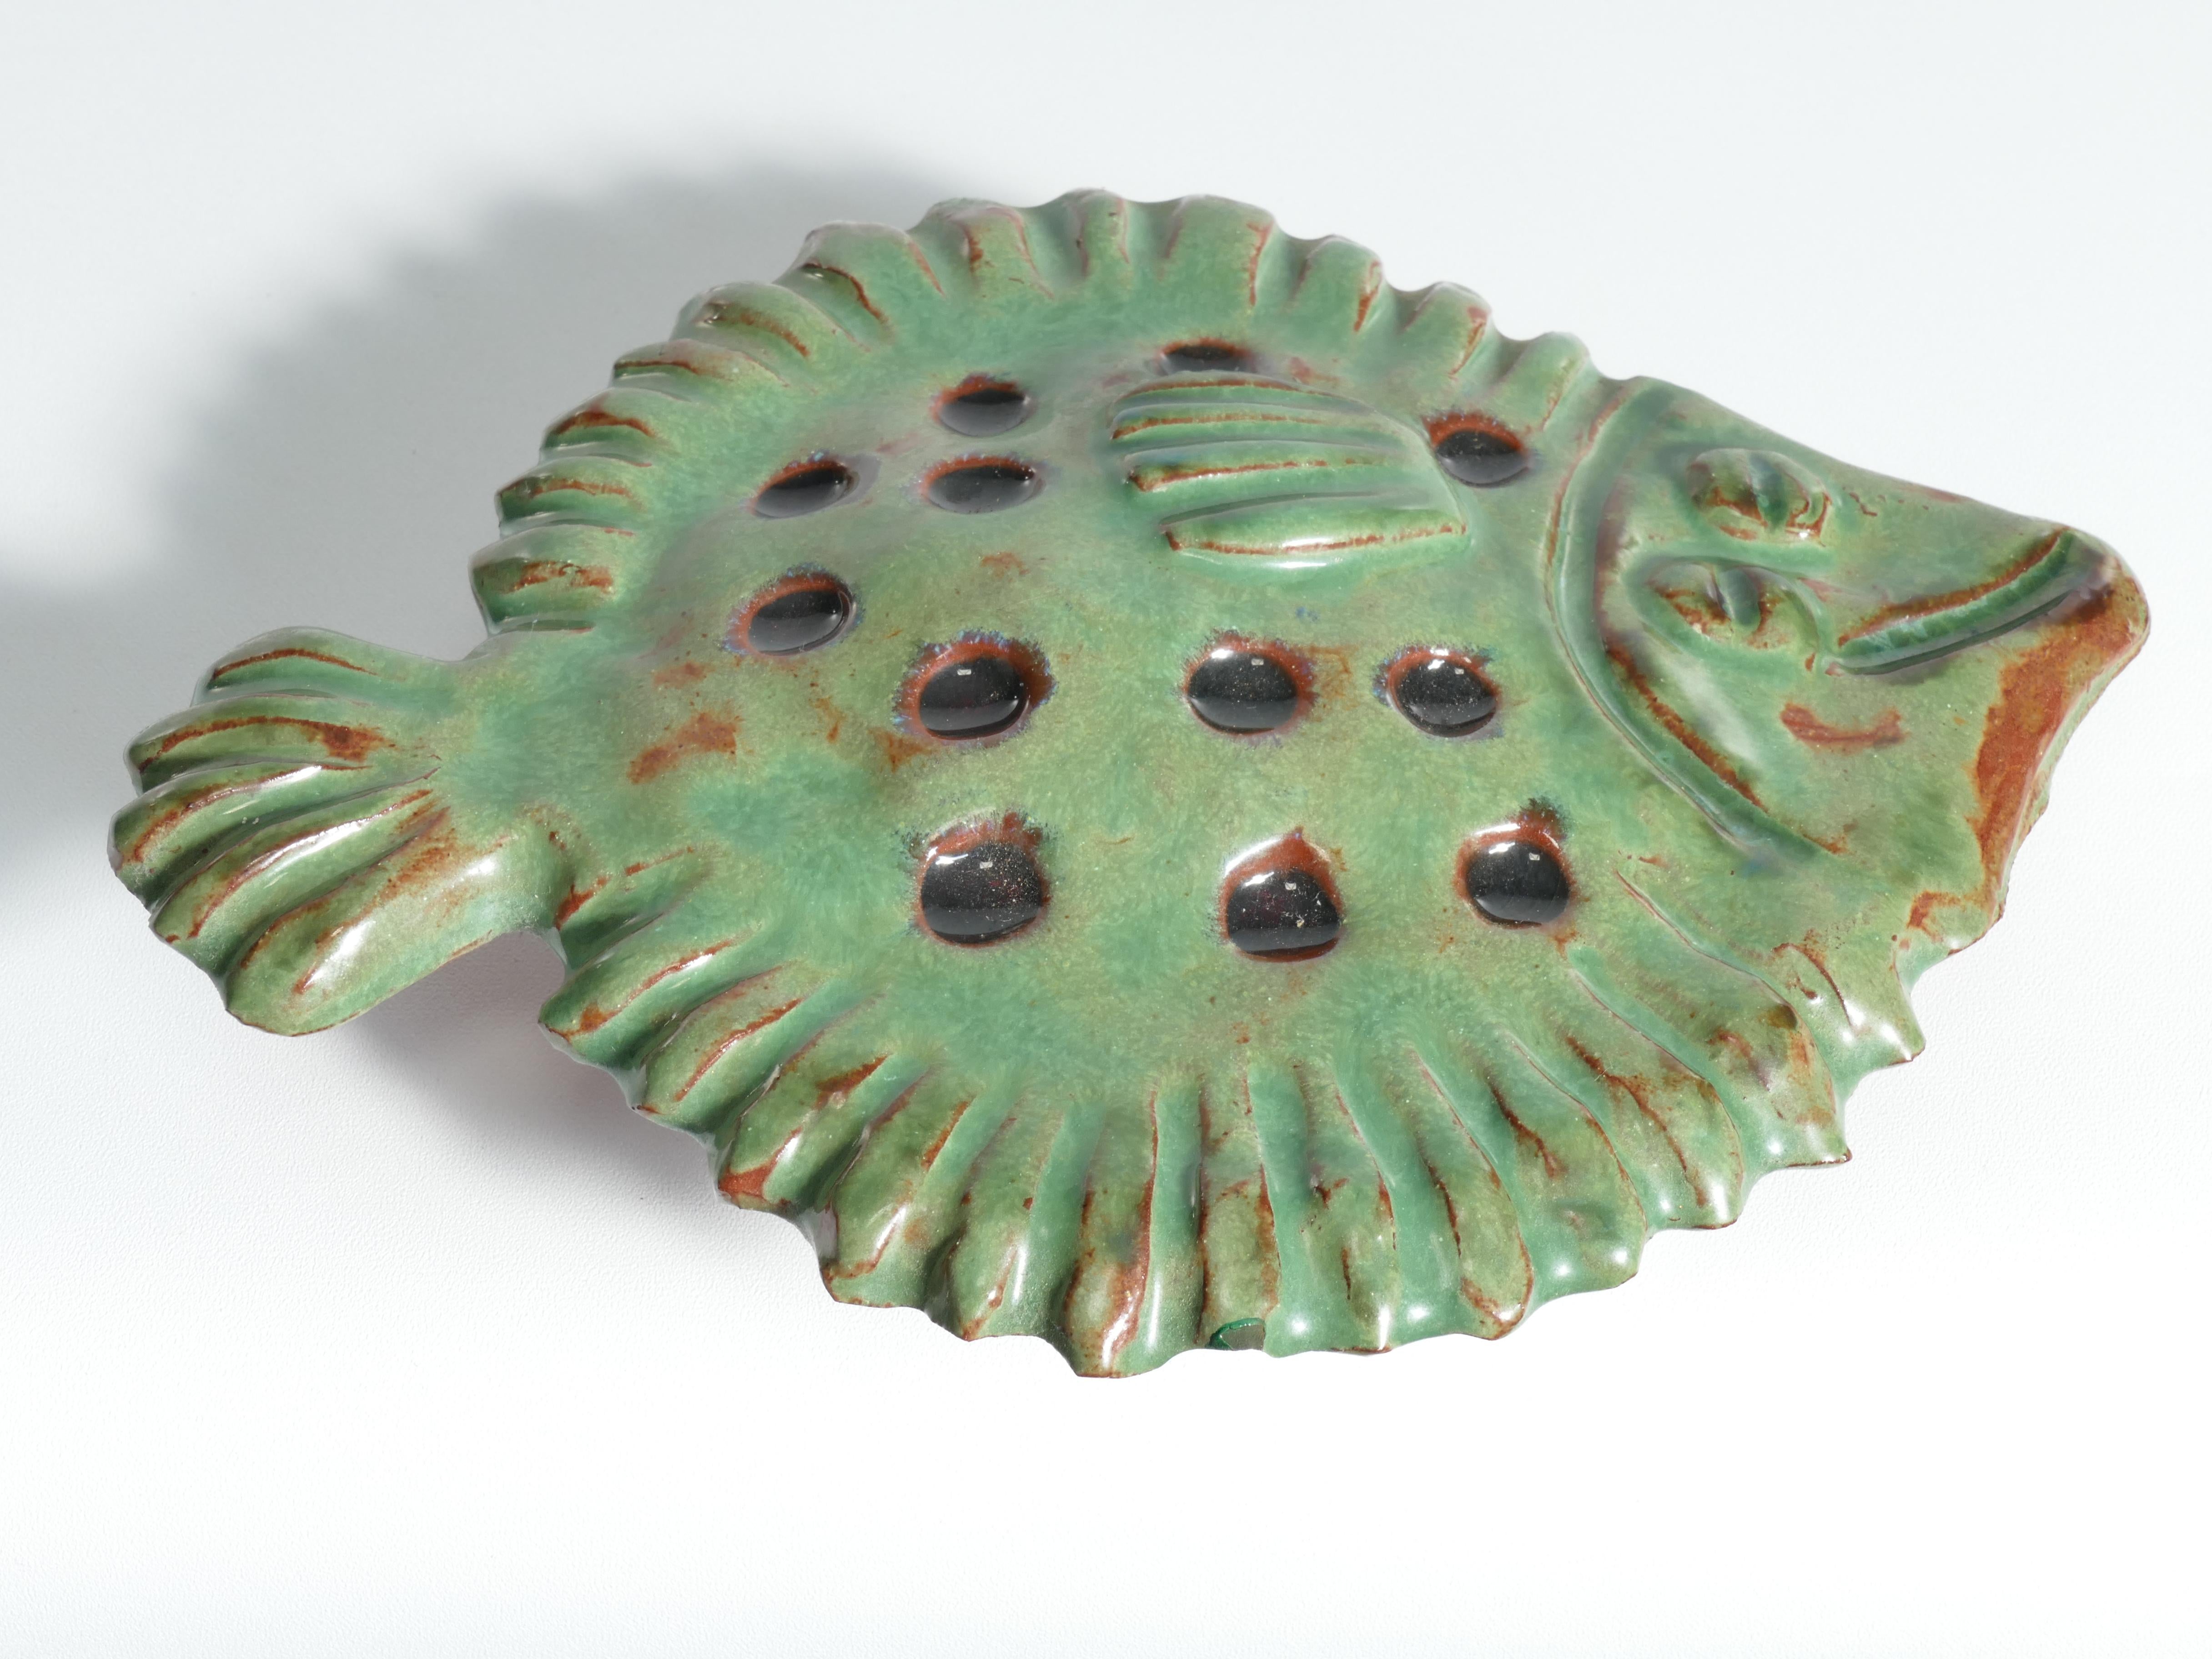 Vintage Green Ceramic Flounder Fish by Allan Hellman, Sweden 1981 For Sale 3